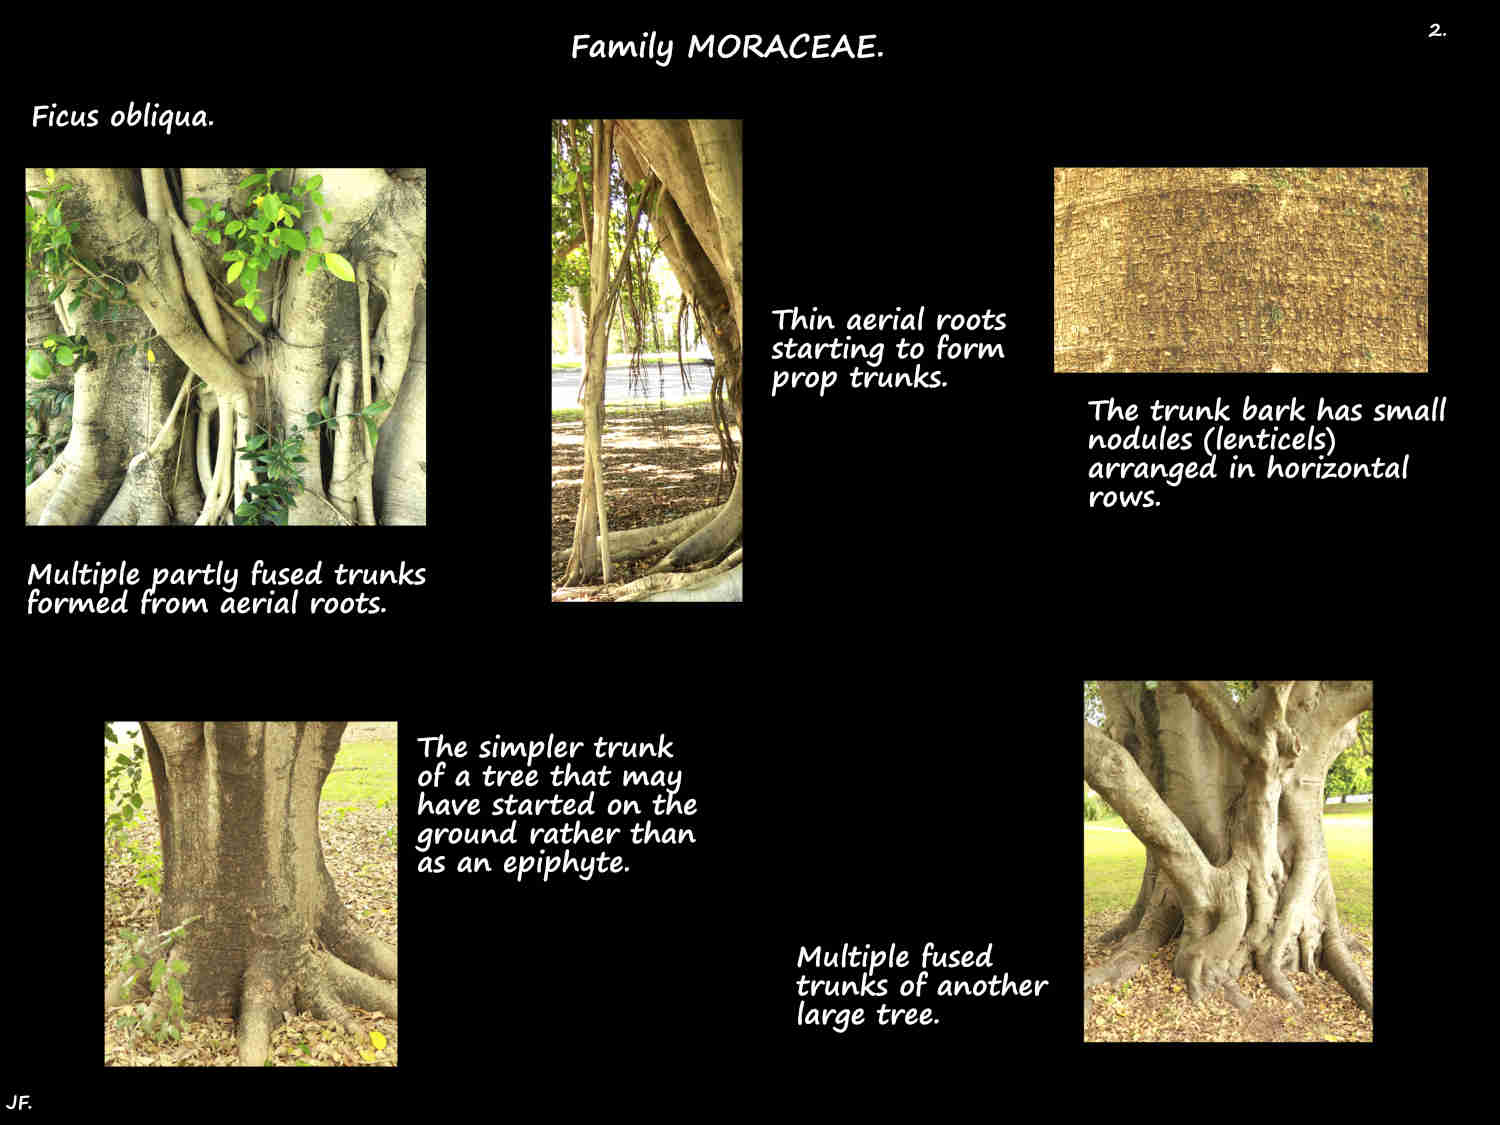 2 Simple & complex Ficus obliqua trunks